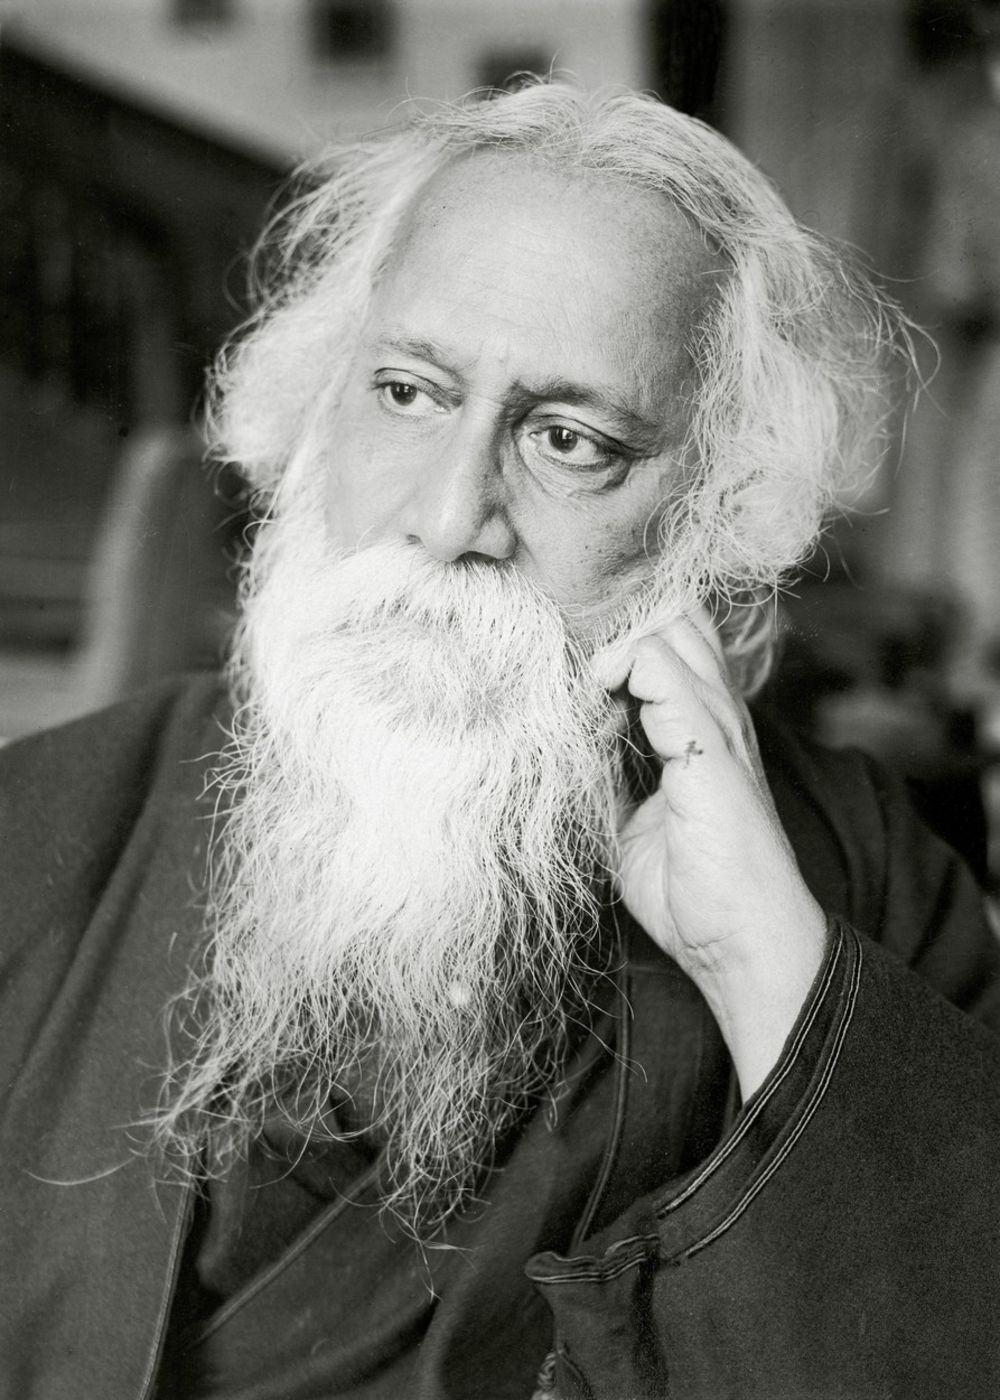 Rabindranat Tagore